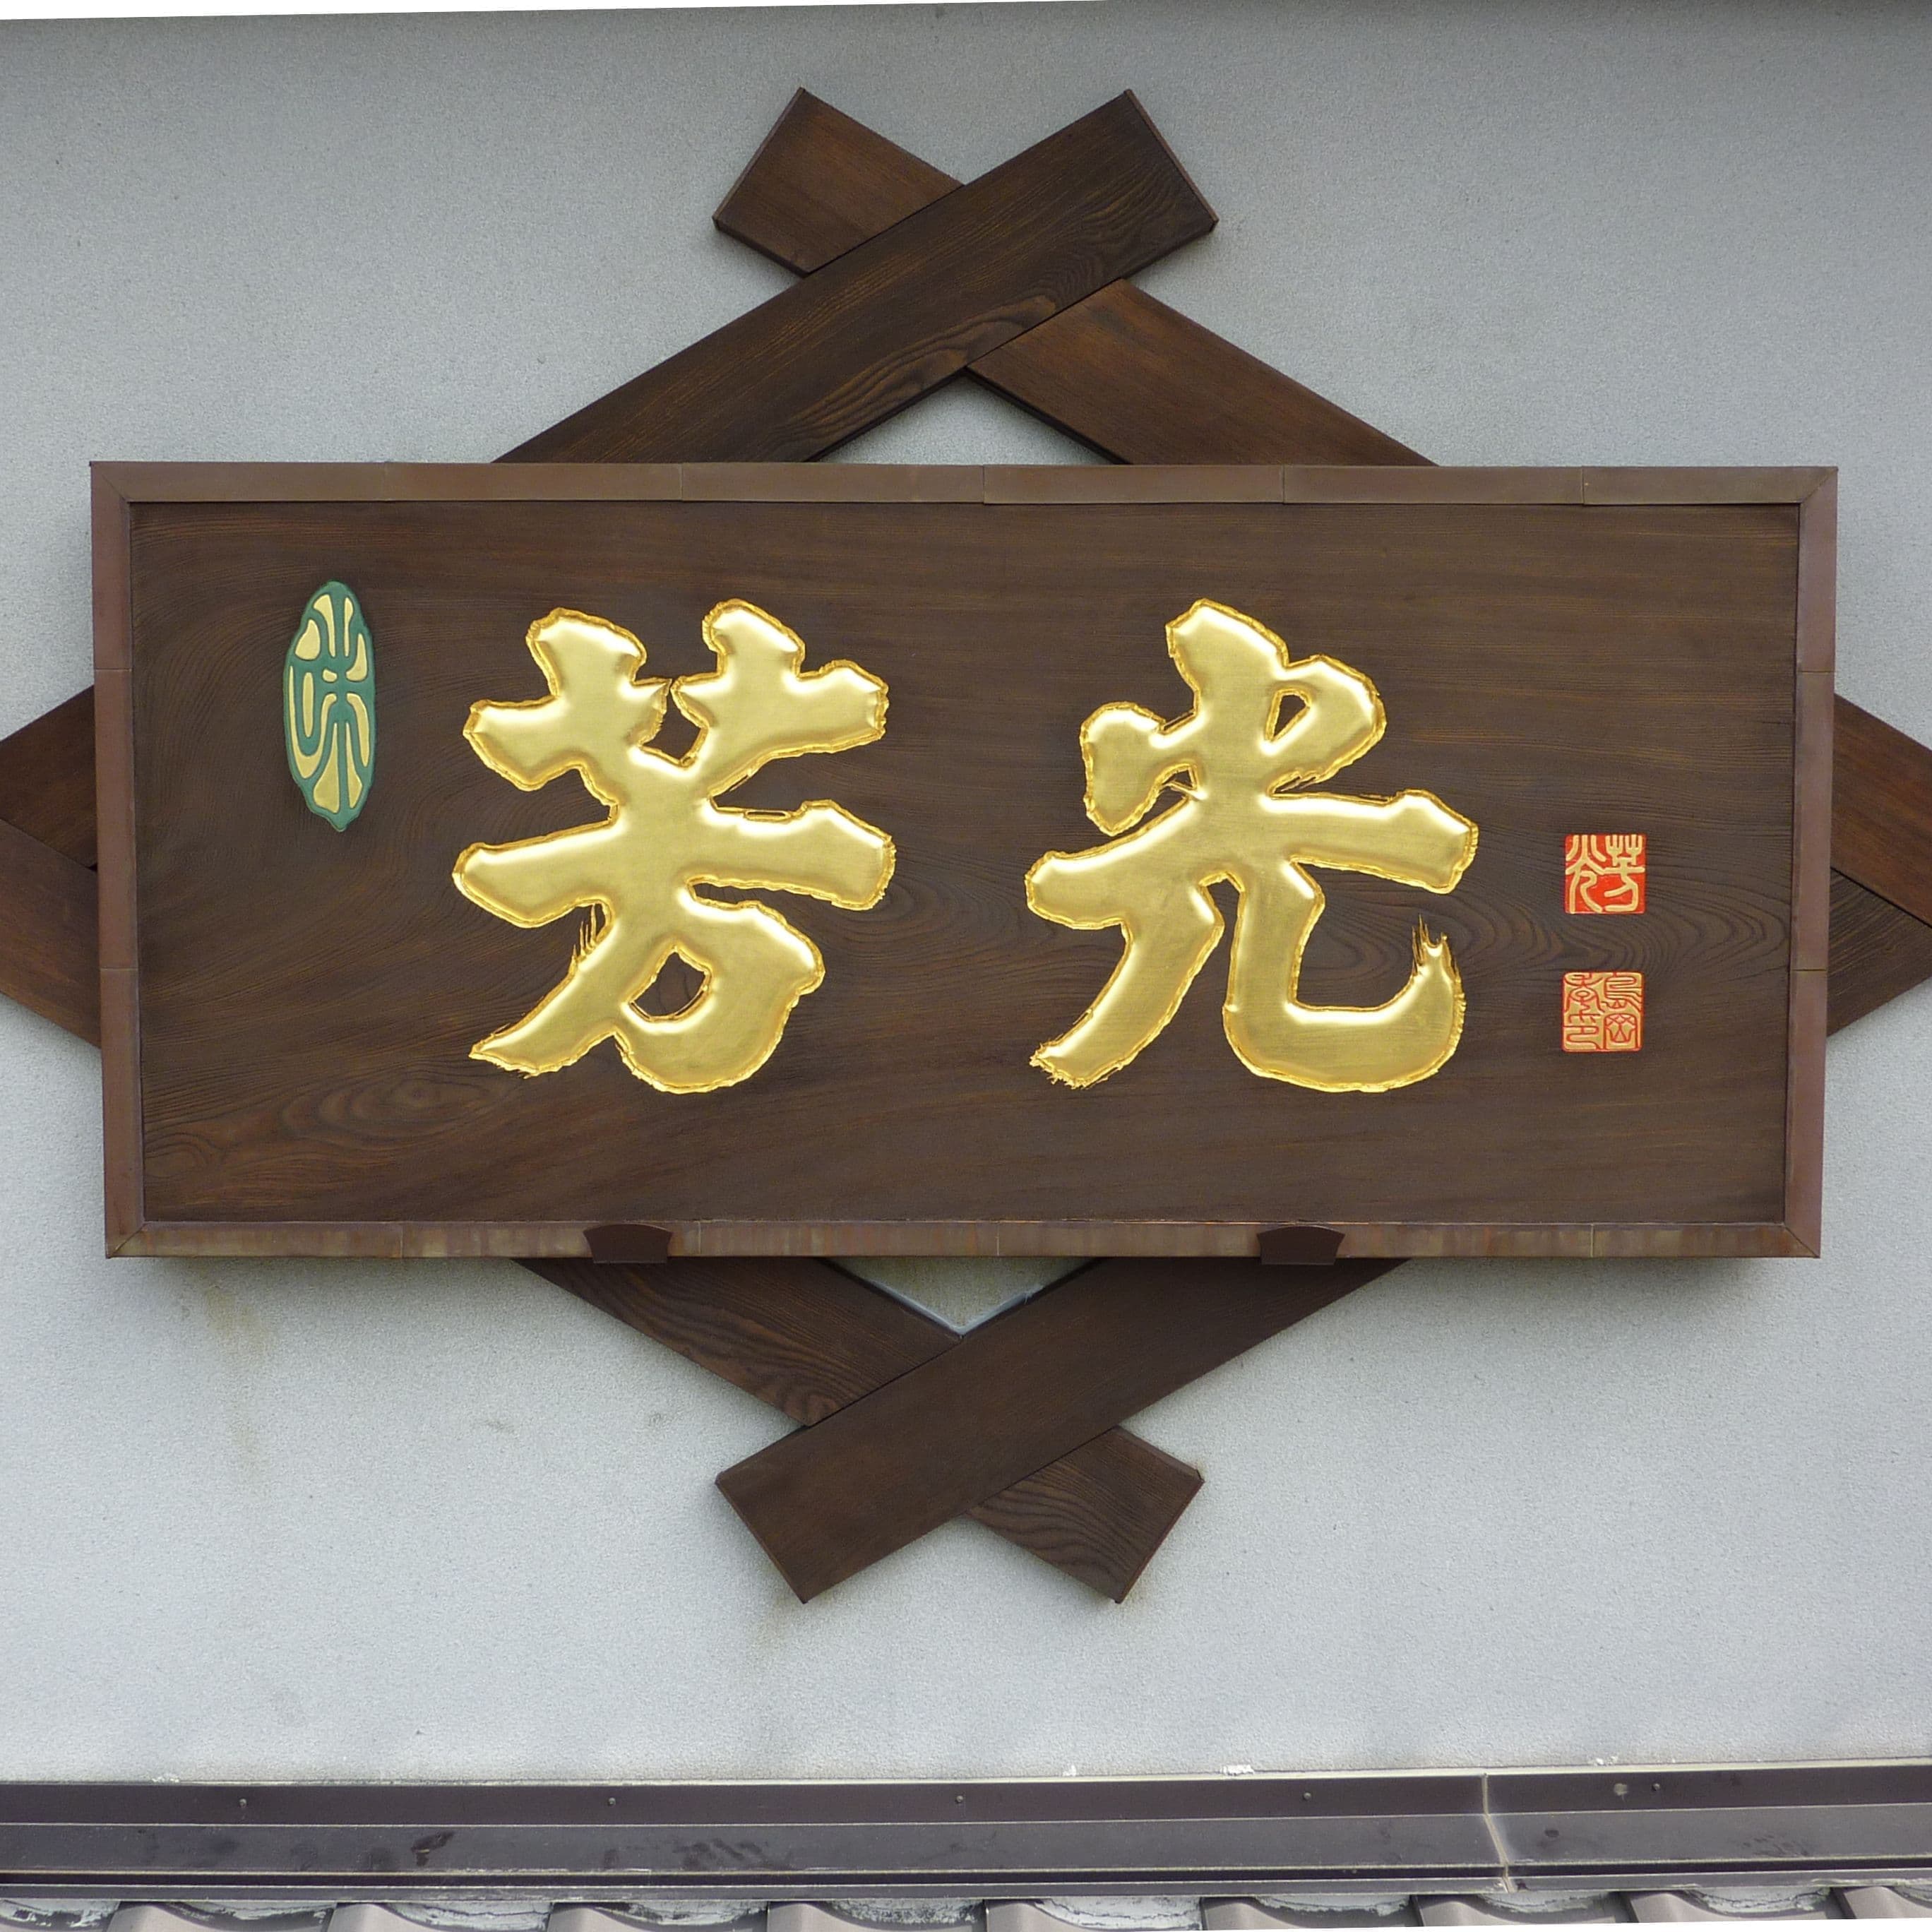 壁に木の看板が設置され、文字は金色、落款も彫刻されている